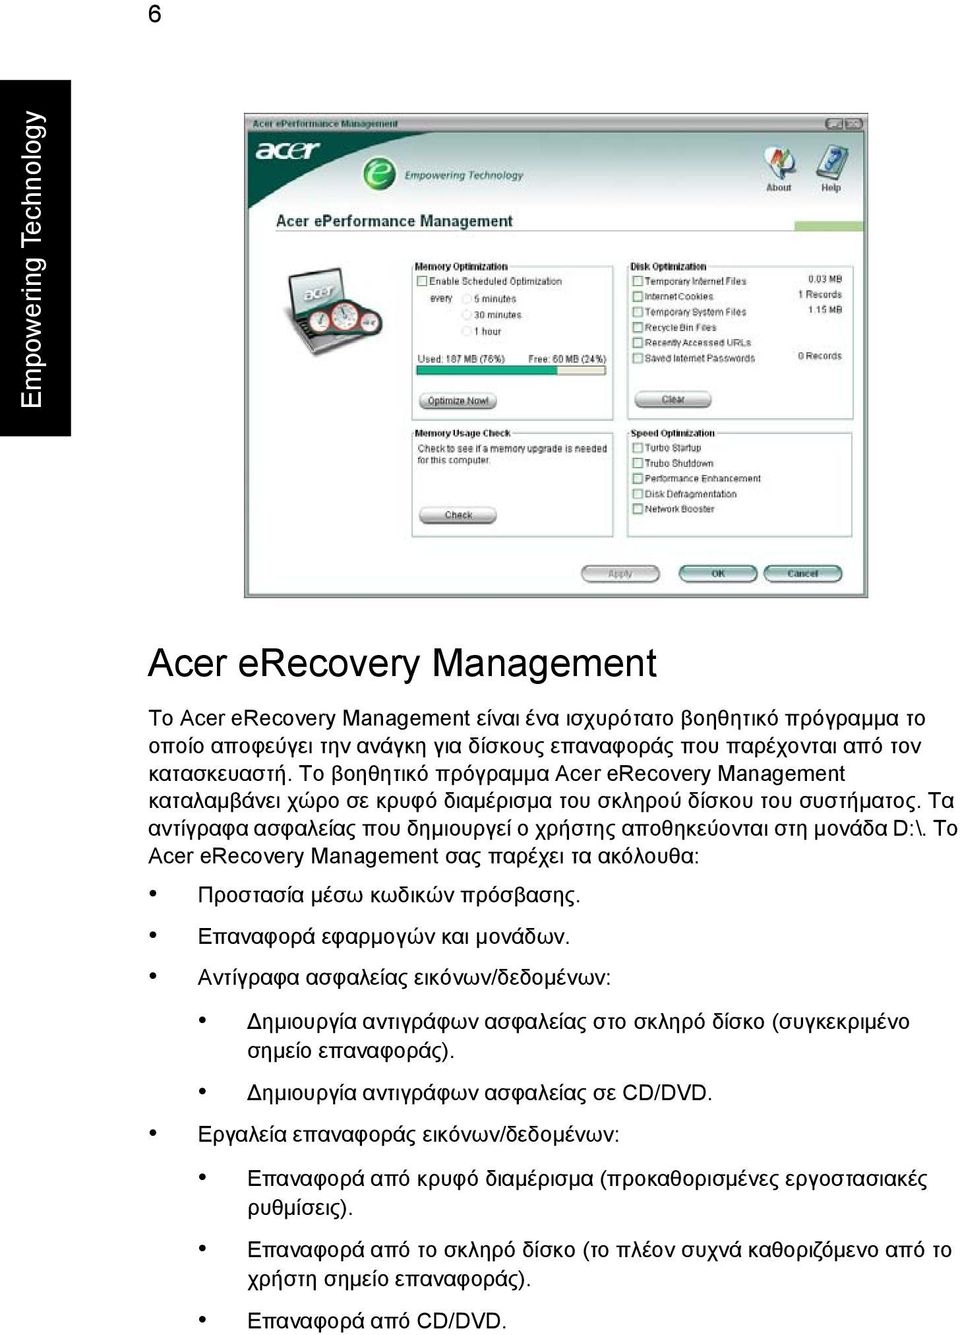 Τα αντίγραφα ασφαλείας που δηµιουργεί ο χρήστης αποθηκεύονται στη µονάδα D:\. Το Acer erecovery Management σας παρέχει τα ακόλουθα: Προστασία µέσω κωδικών πρόσβασης. Επαναφορά εφαρµογών και µονάδων.